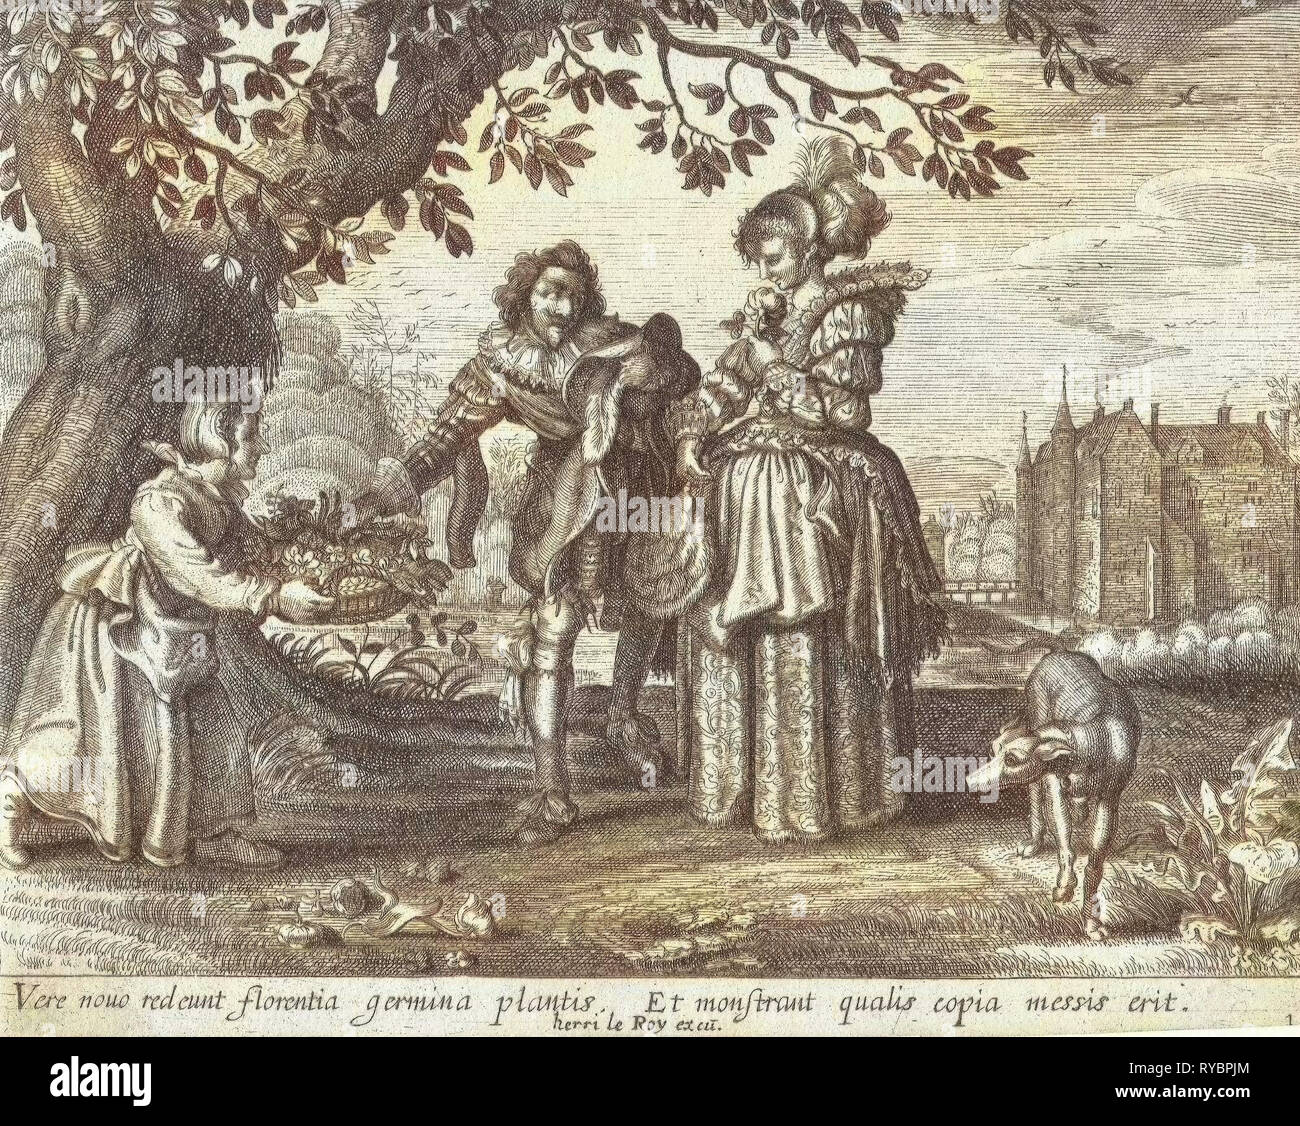 Molla, Daniël van den Bremden, Adriaen Pietersz. van de Venne, Herri le Roy, 1625 - 1630 Foto Stock